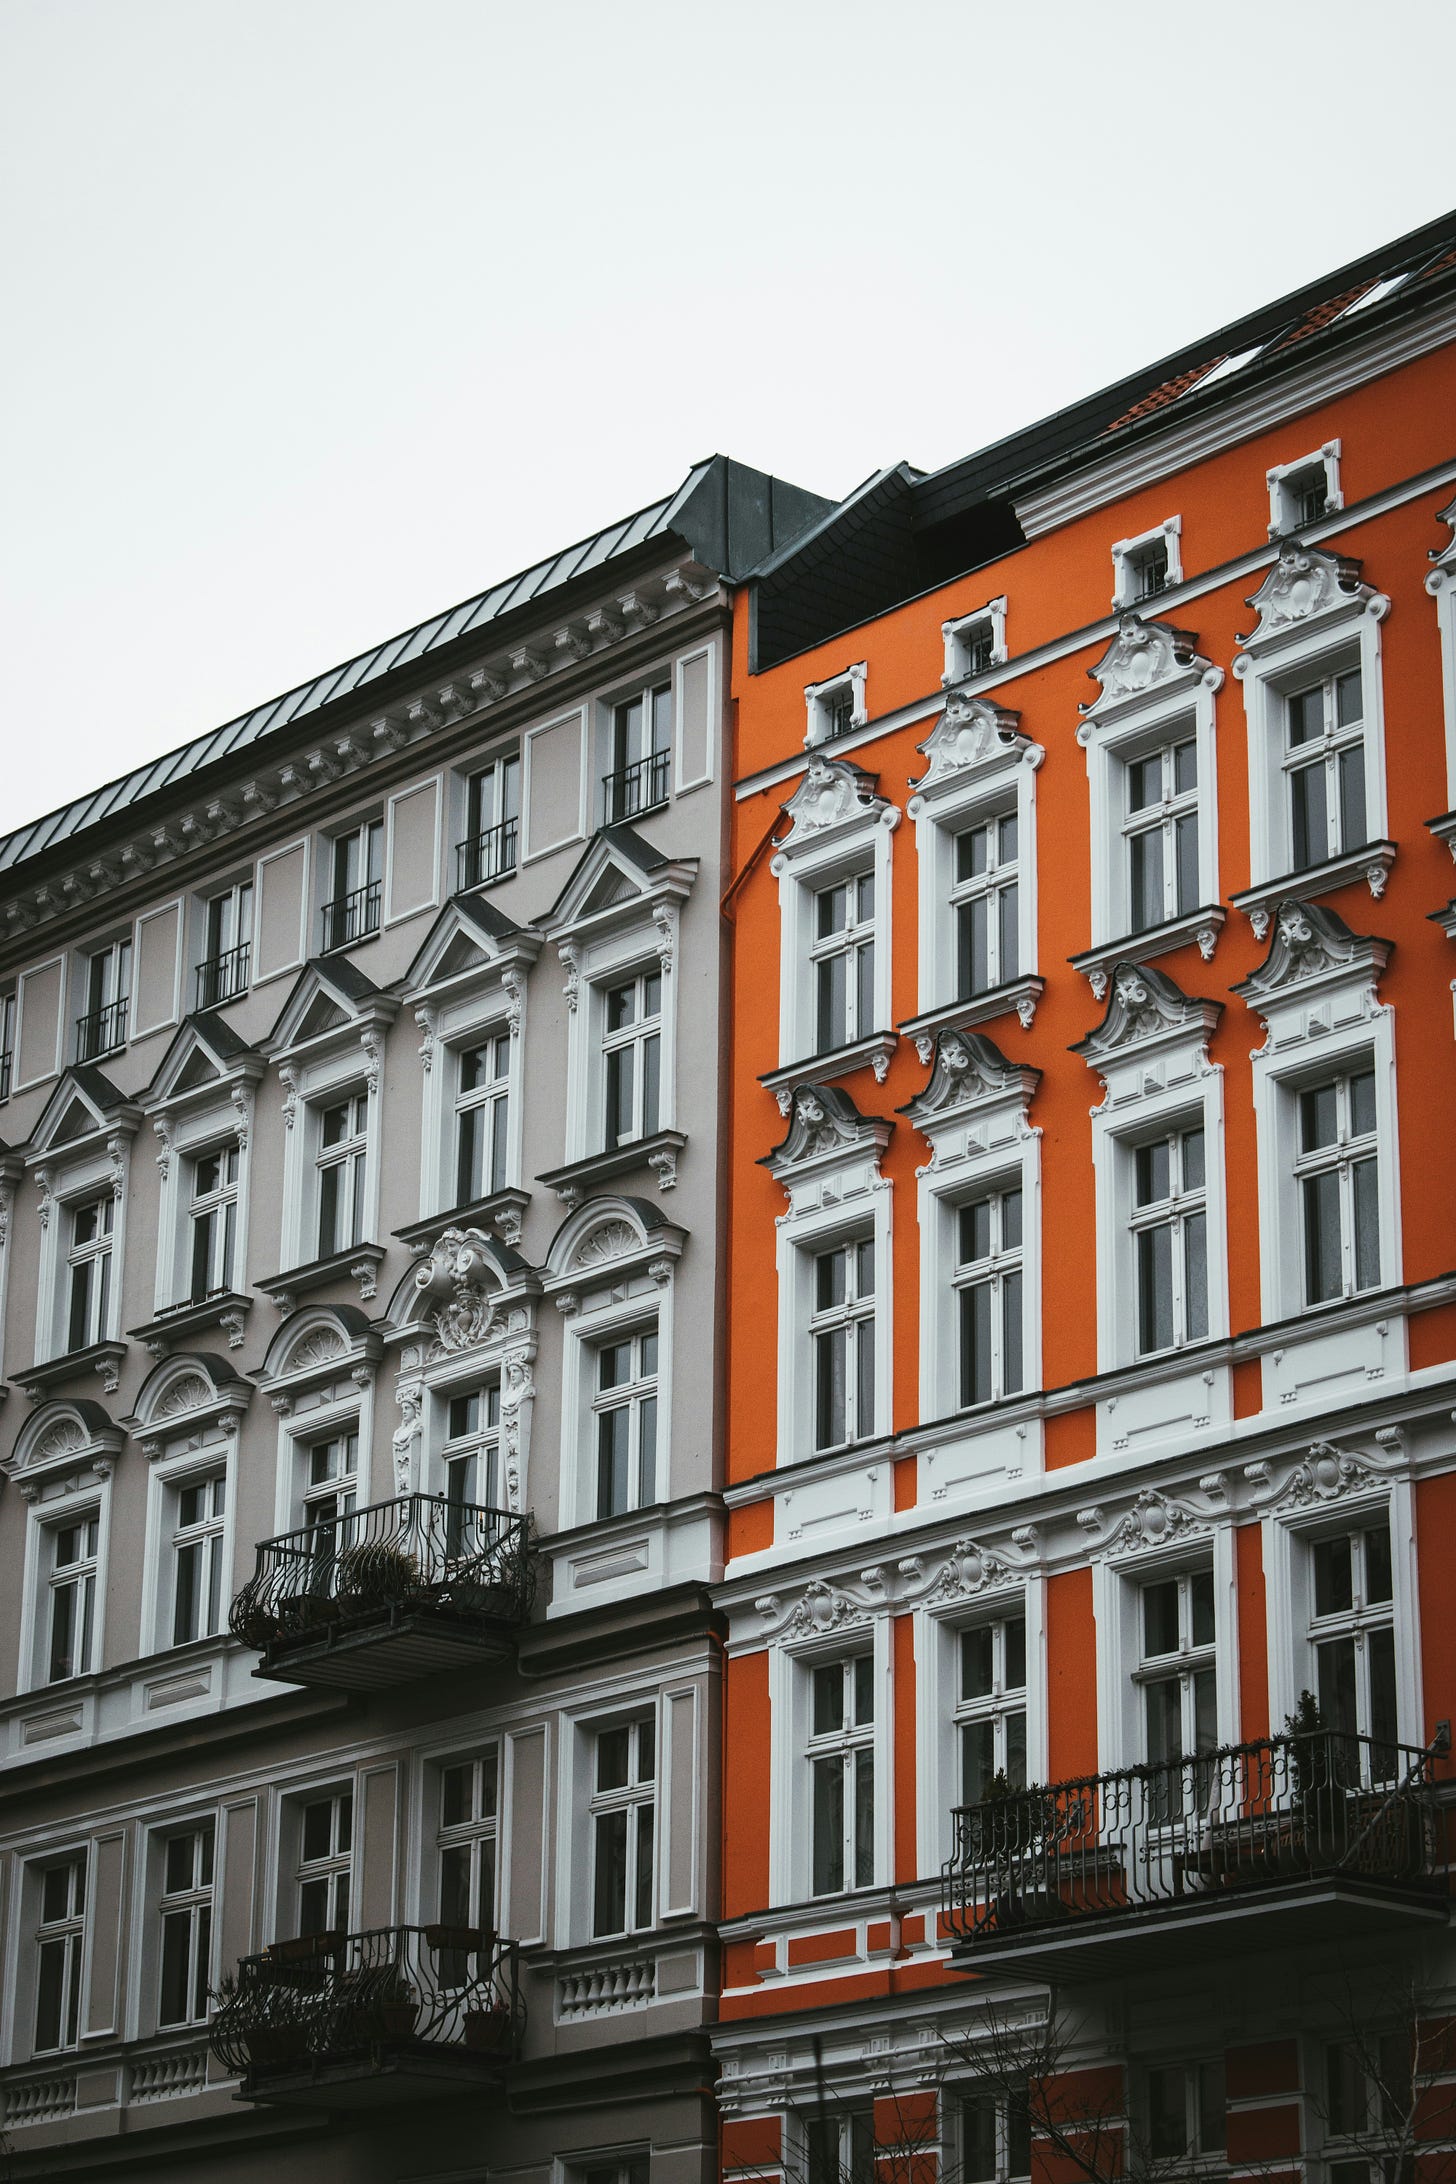 Street view of rental apartments in Berlin.